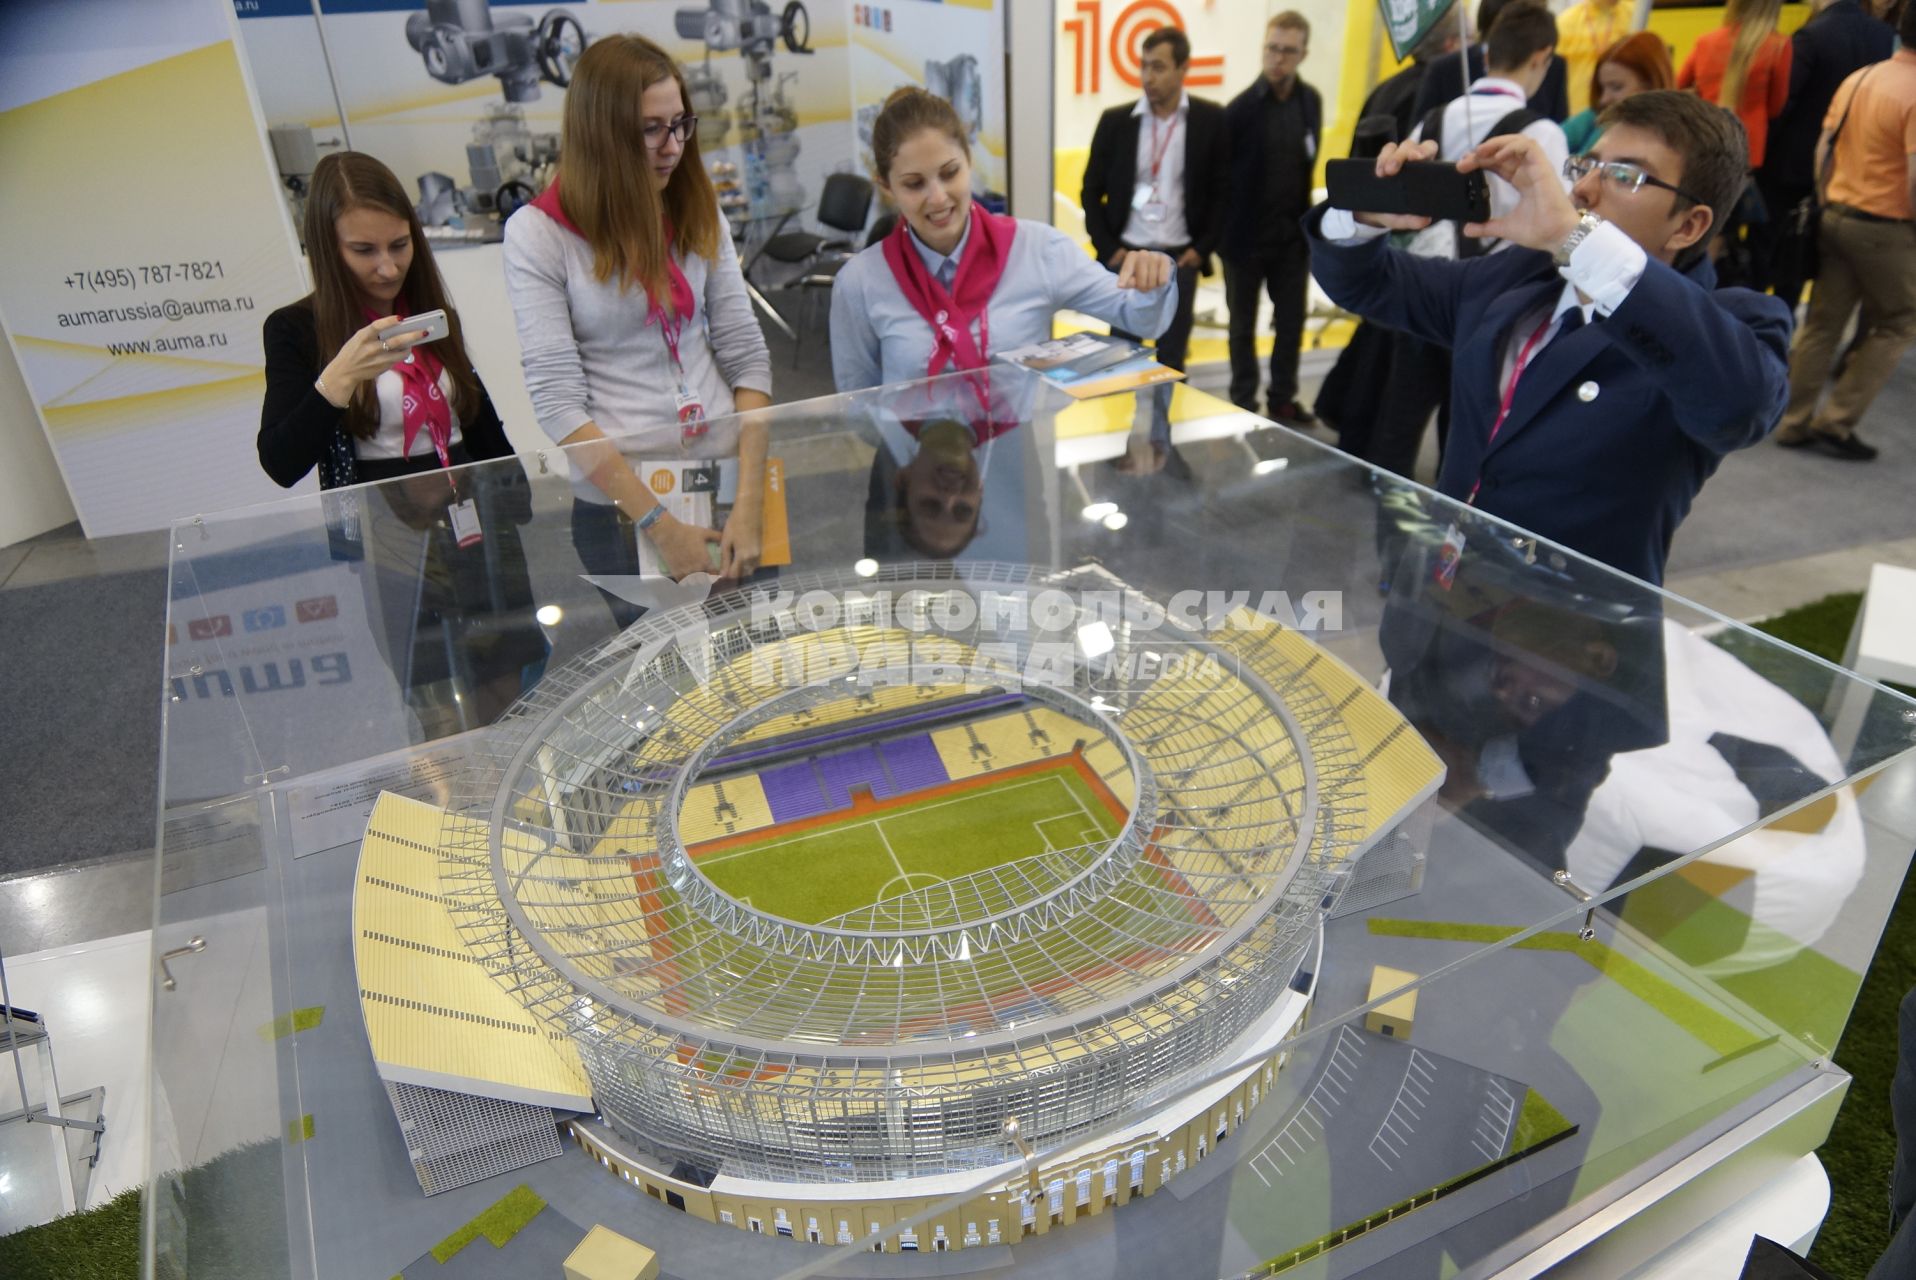 Посетители у макета центрального стадиона Екатеринбурга, готовящегося к чемпионату мира по футболу в 2018г. на выставке \"Иннопром - 2015\" в павильоне EXPO. Екатеринбург